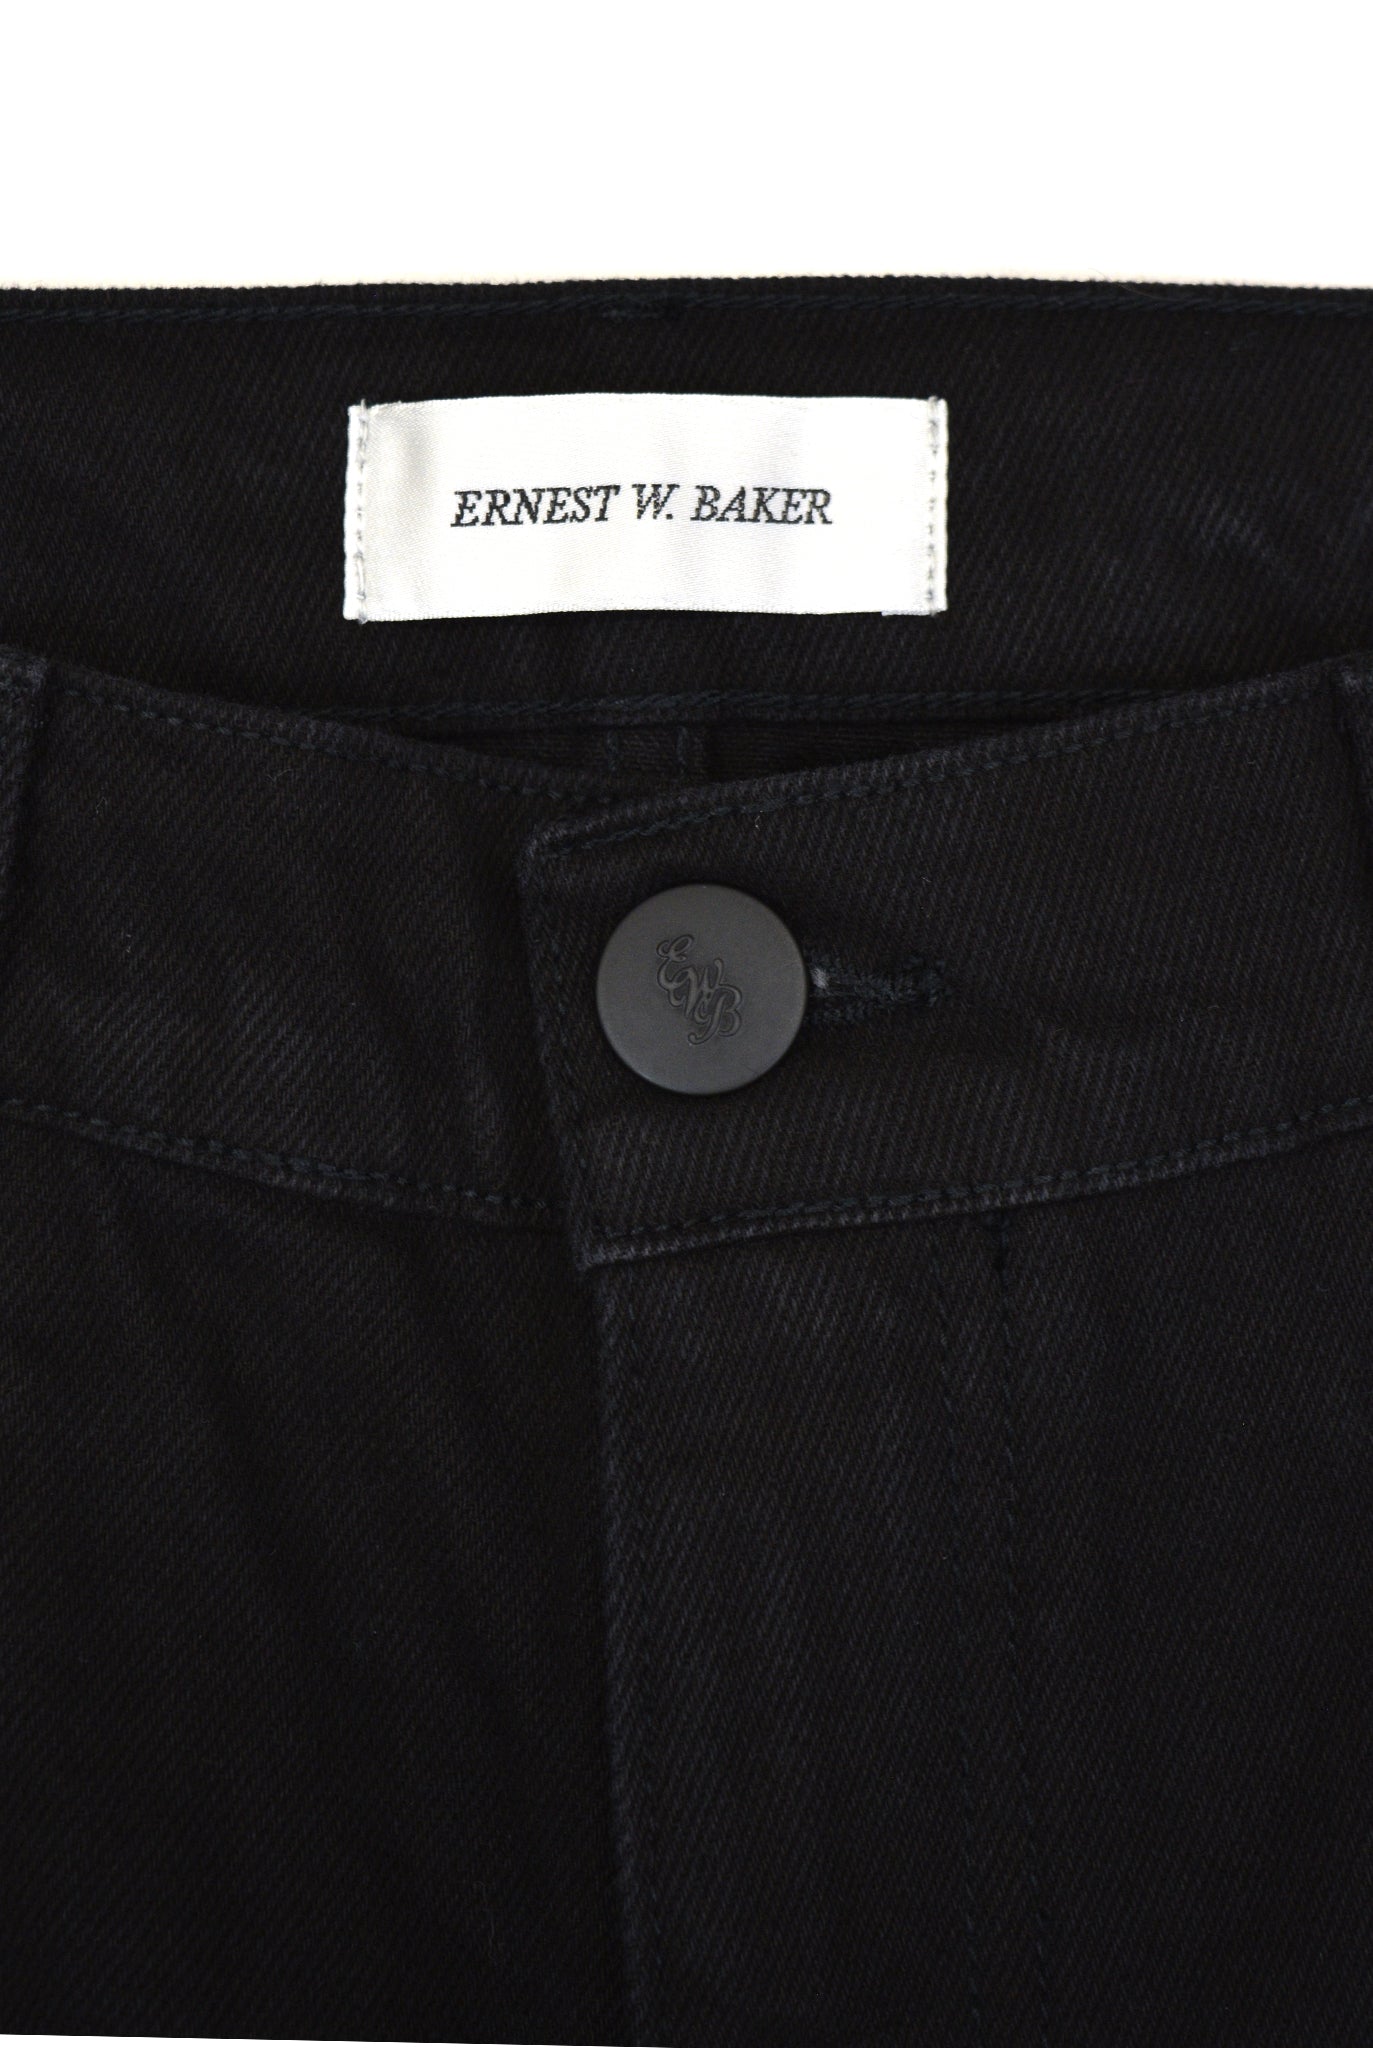 Ernest W. Baker Flared Jeans, Black